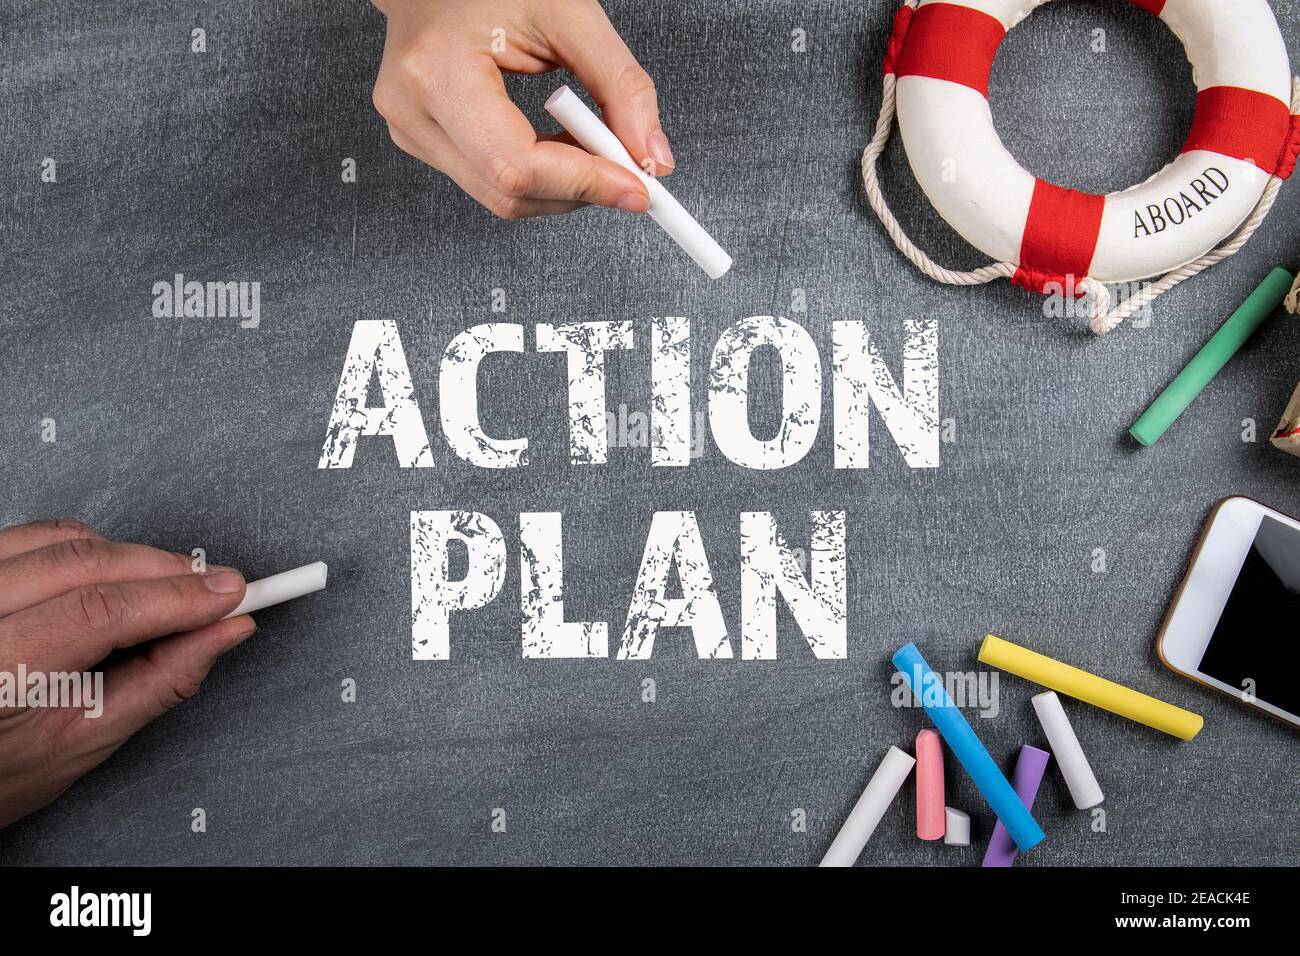 Concept de plan d'action. Craie colorée et fournitures de bureau sur un  tableau noir Photo Stock - Alamy